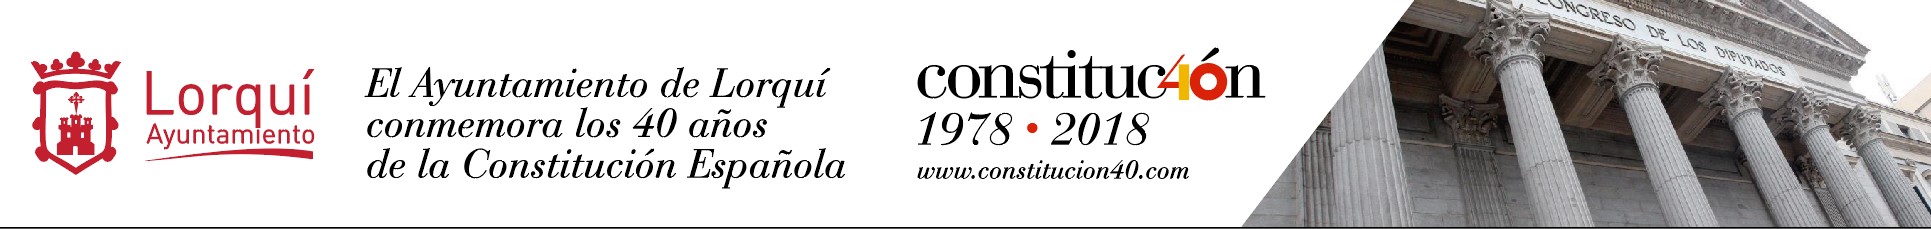 M3 diseña la lona 40 aniversario de la constitución en Lorquí